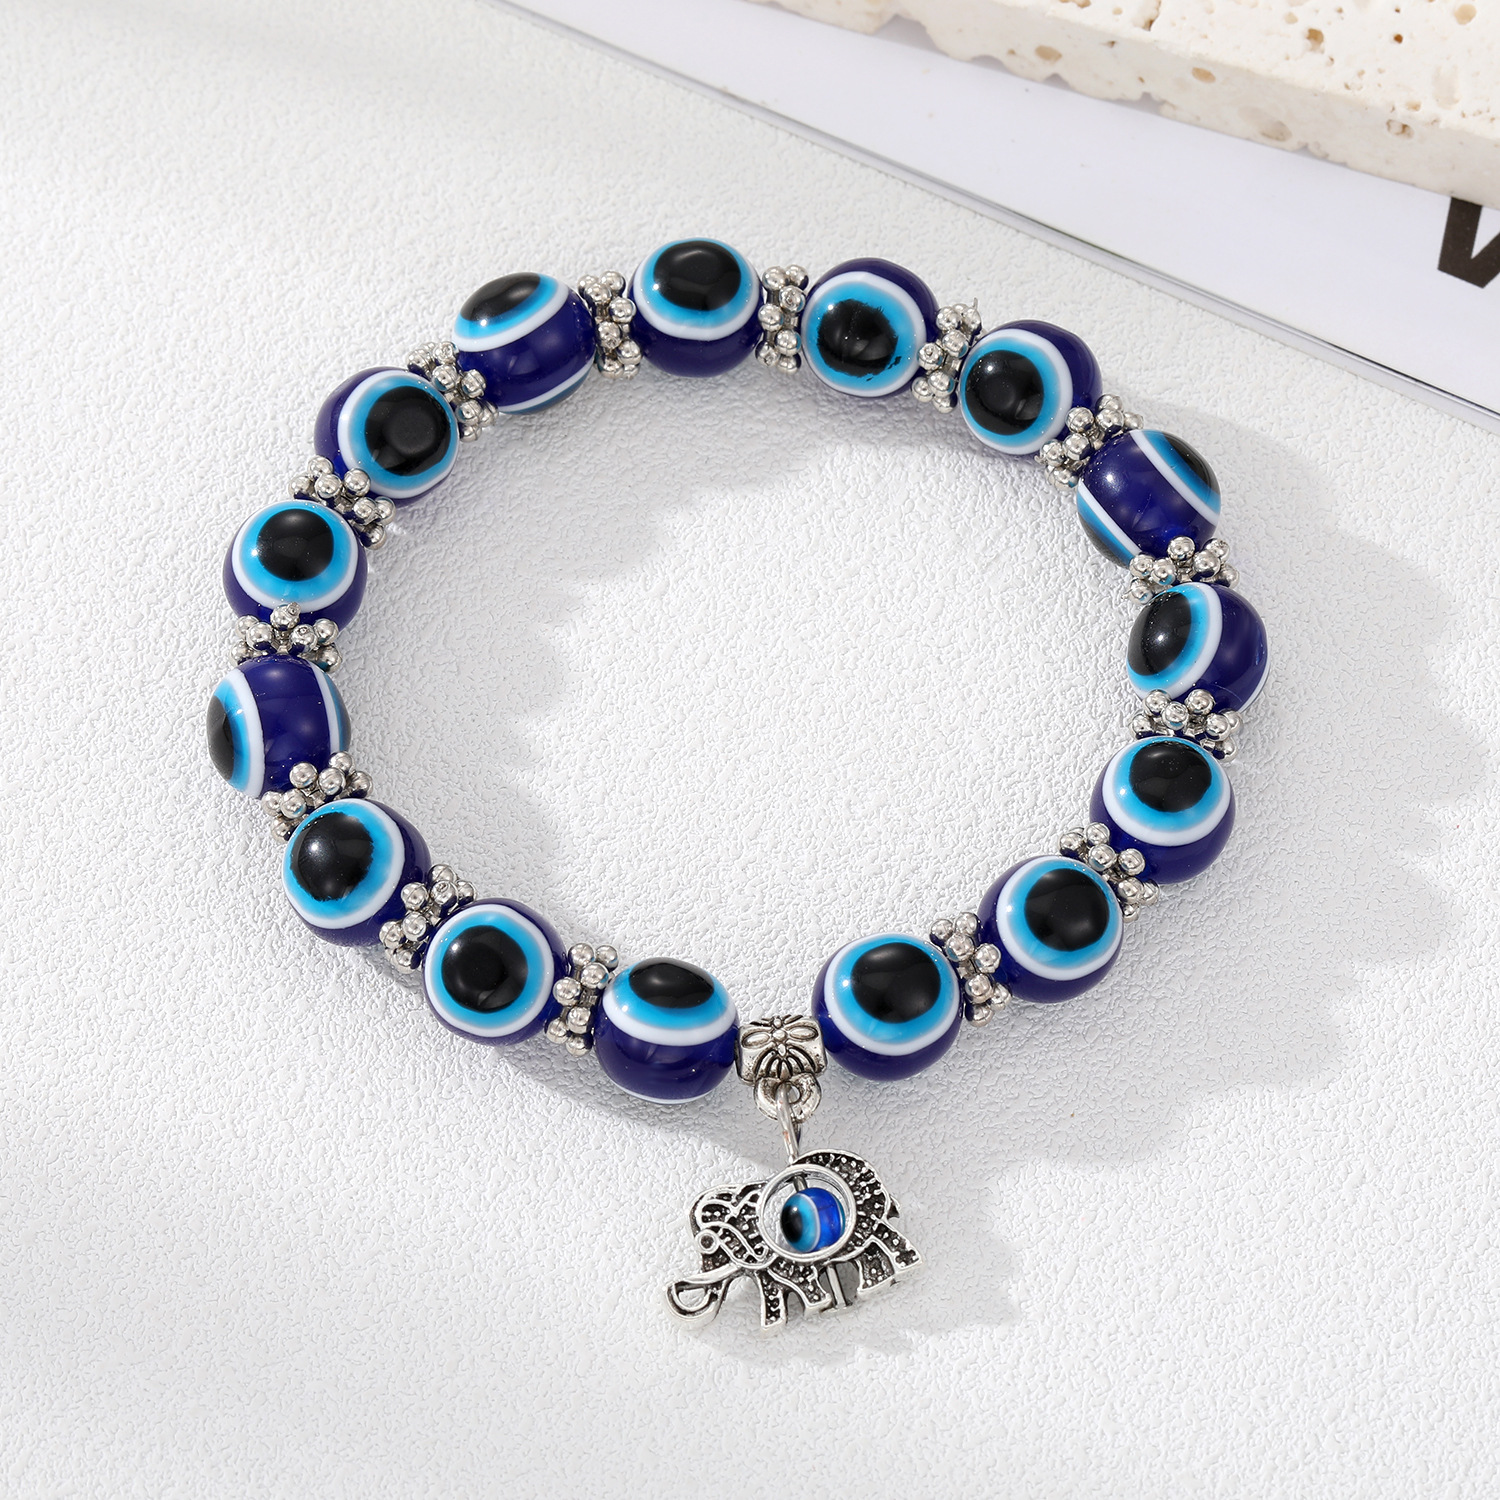 Blue elephant bracelet with large beads